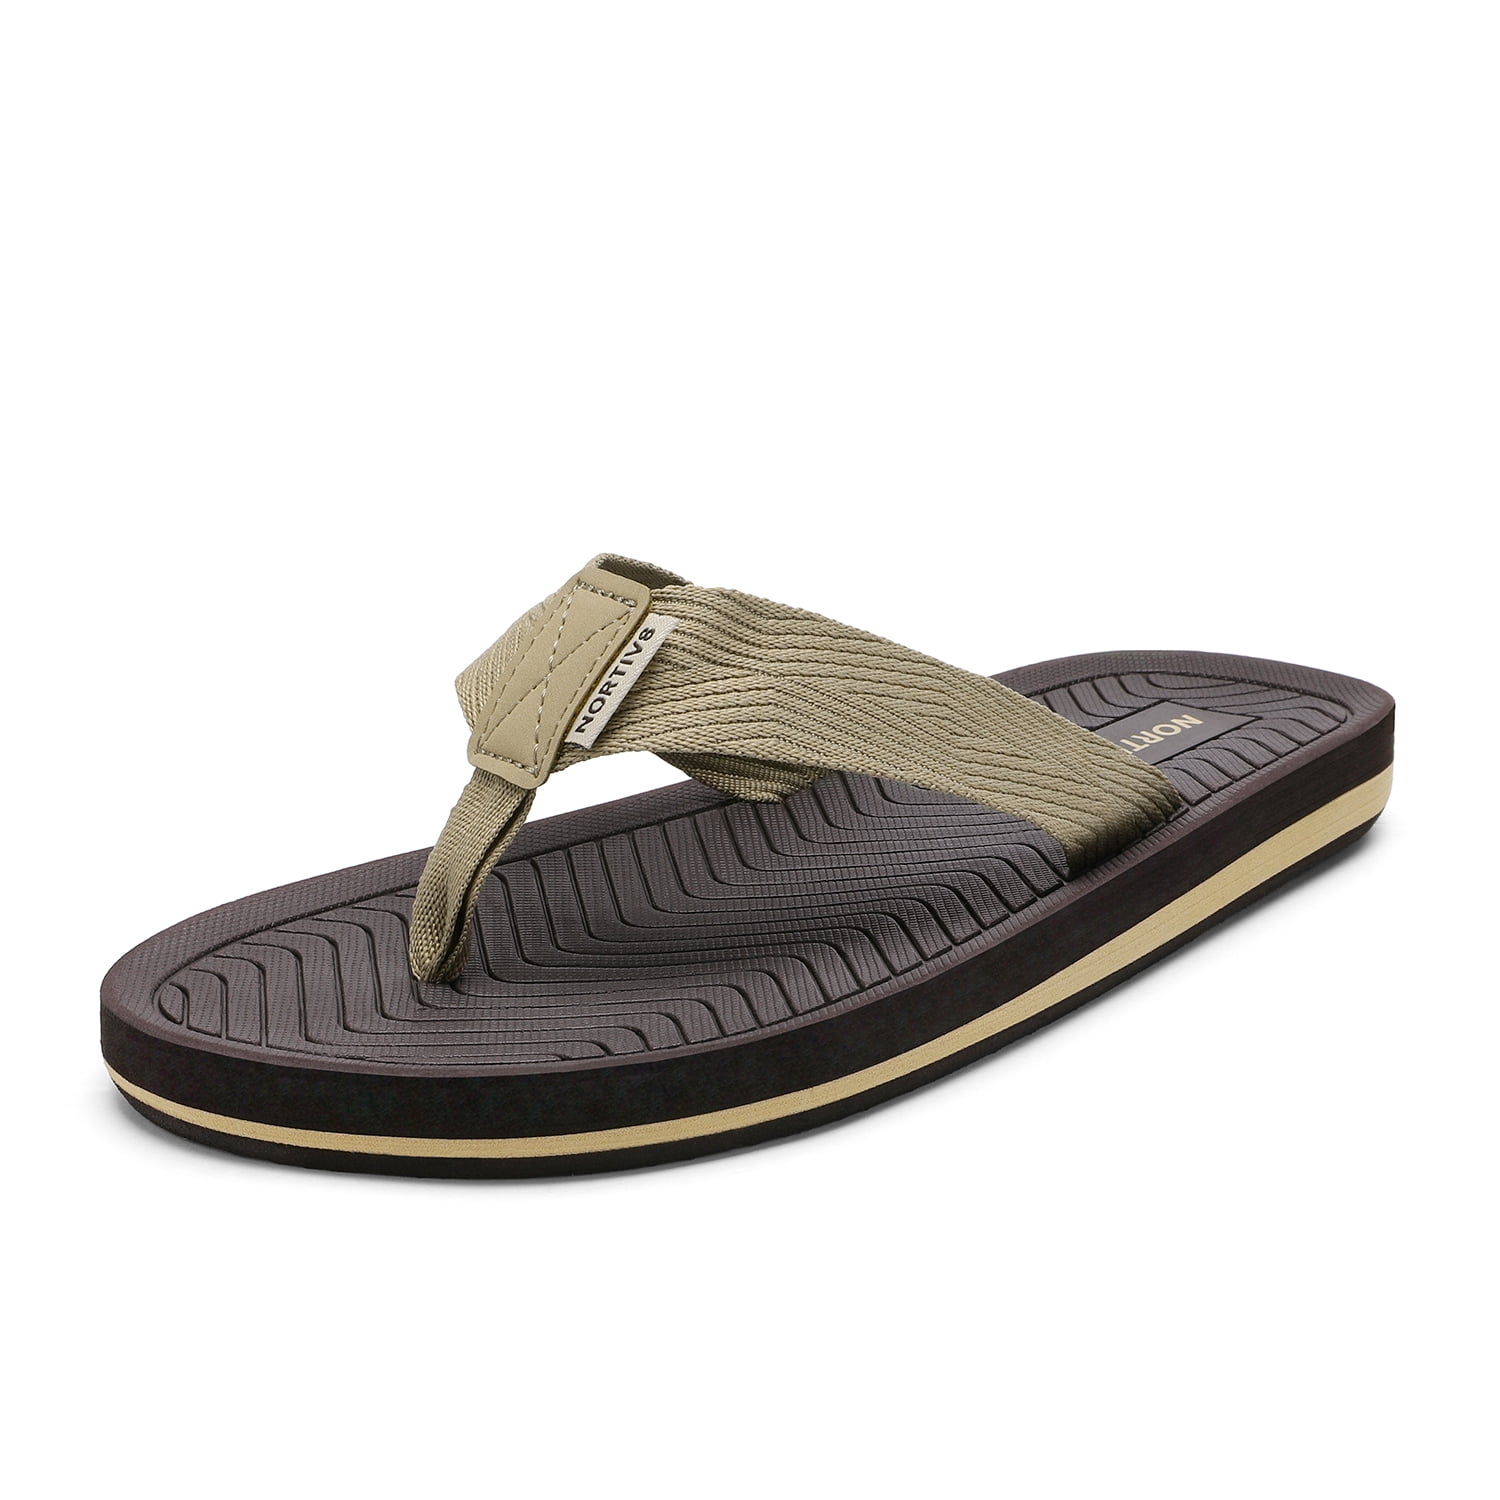 Mens Classic Flip Flops Beach Light Sandals Summer Thong Slippers